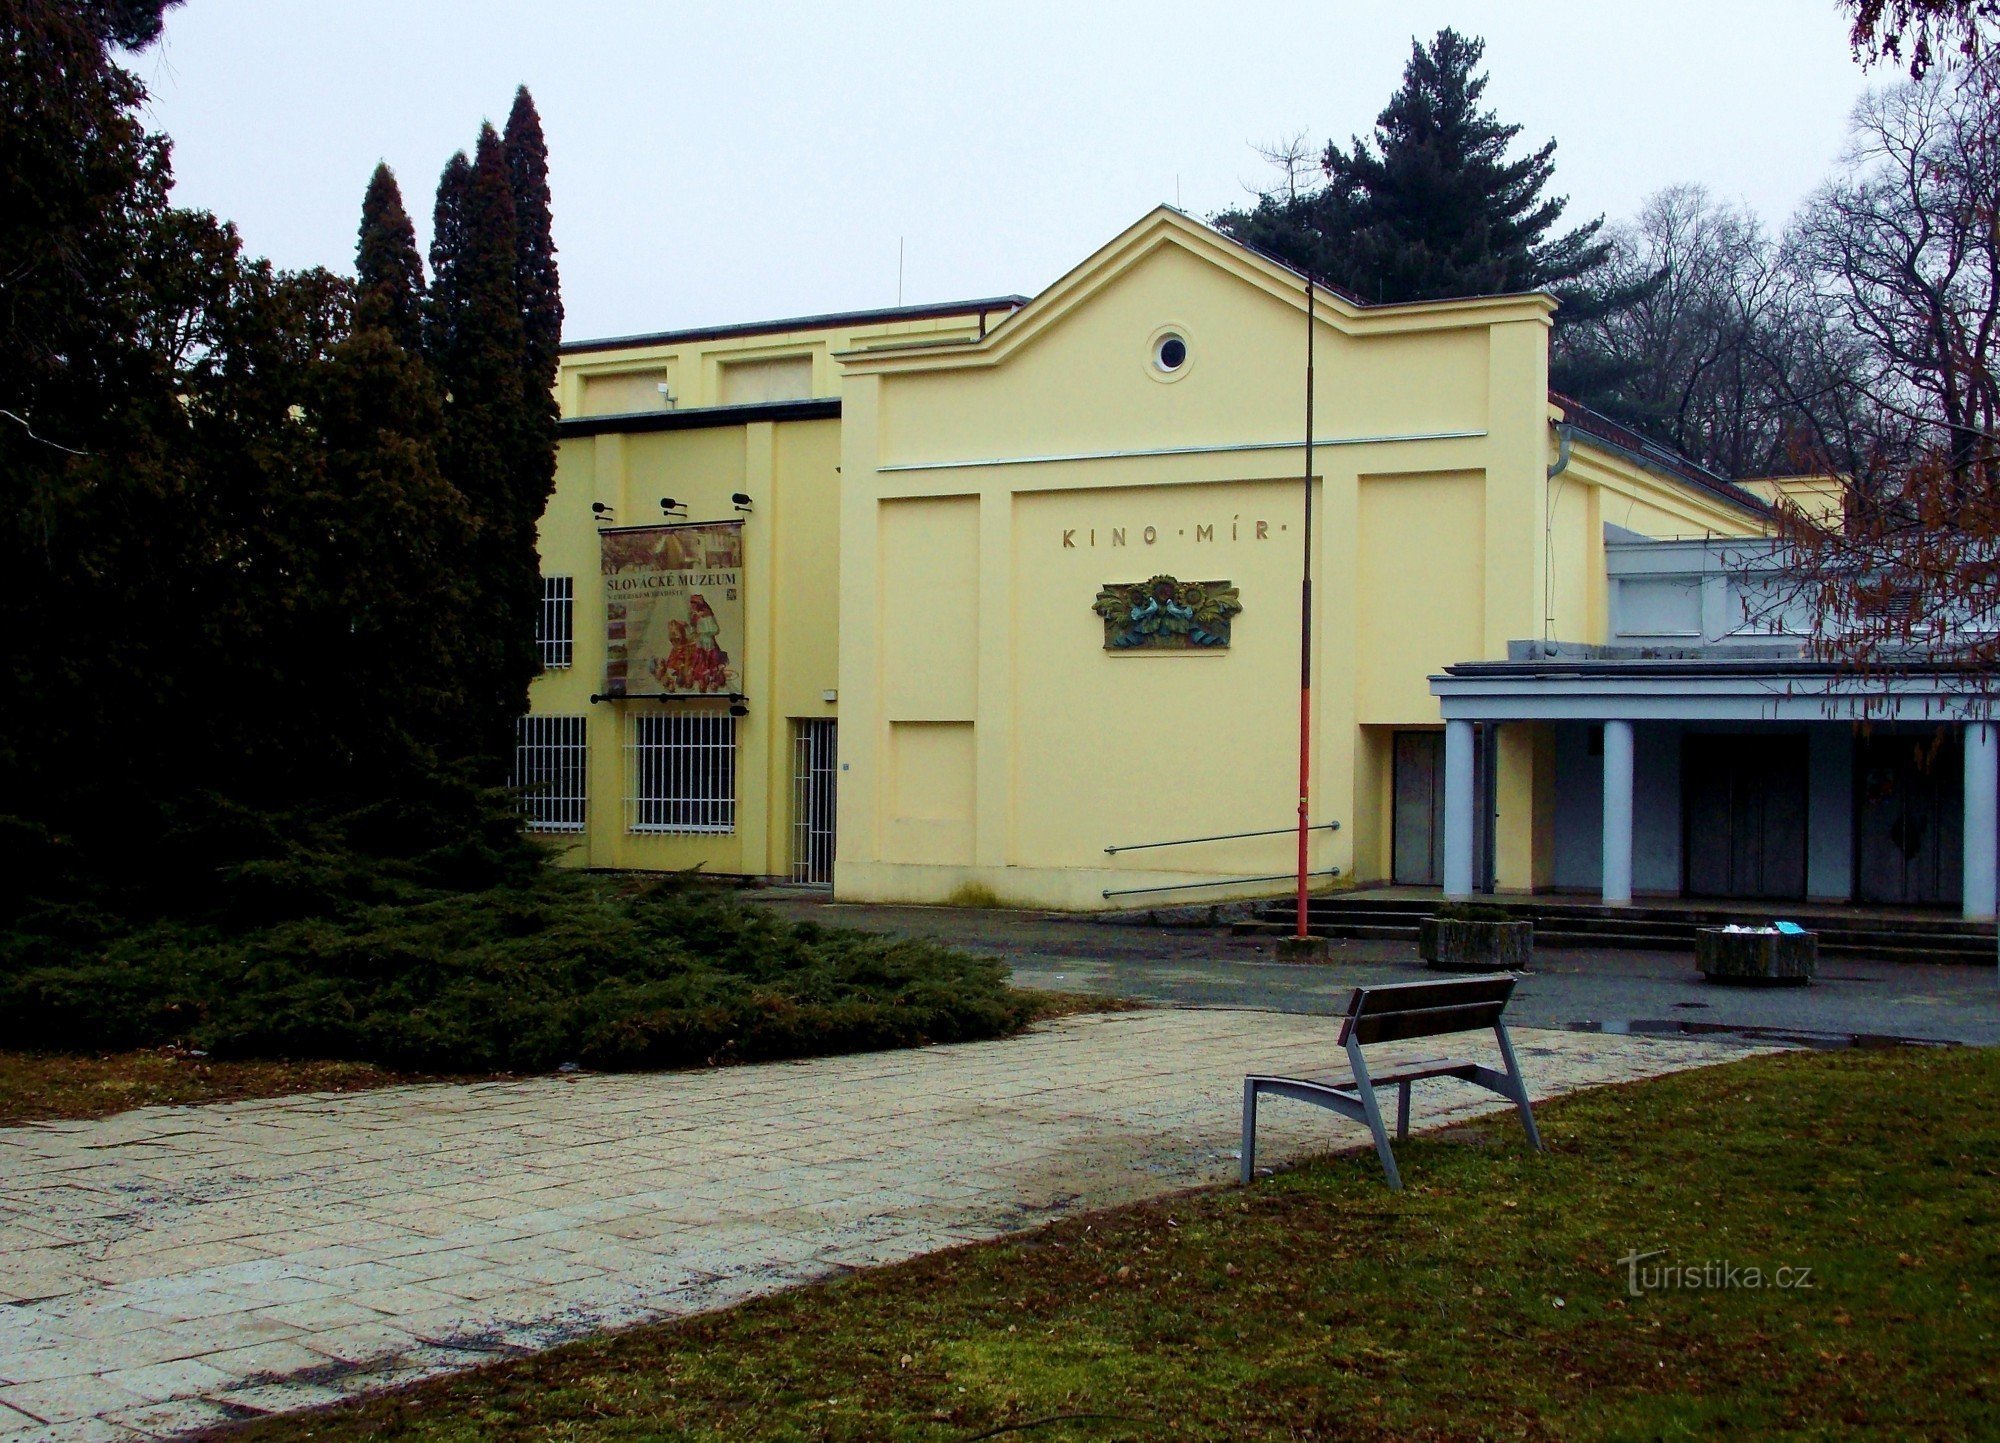 Cinema Mír vastapäätä Šarovec-hotellia